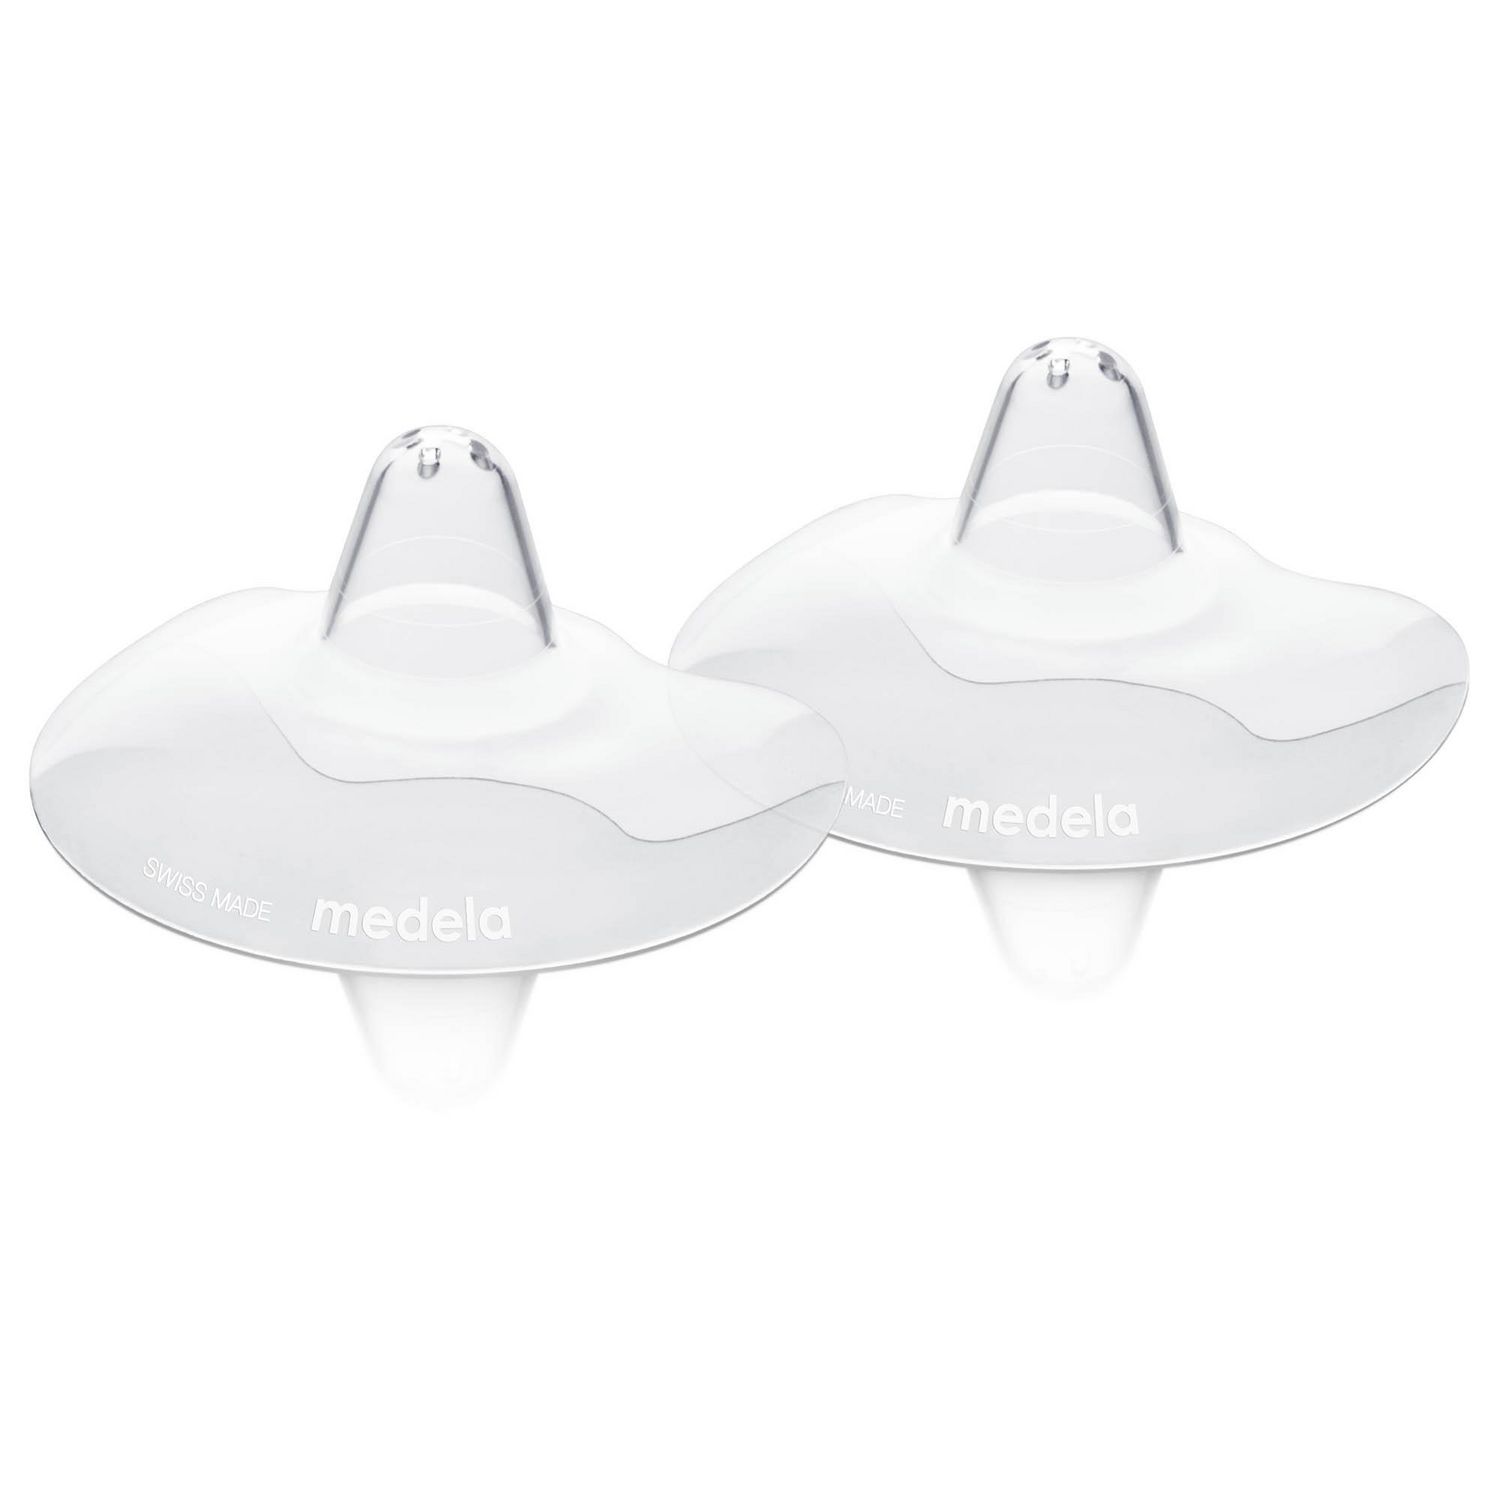 Best nipple shield – Two clear plastic Medela nipple shields